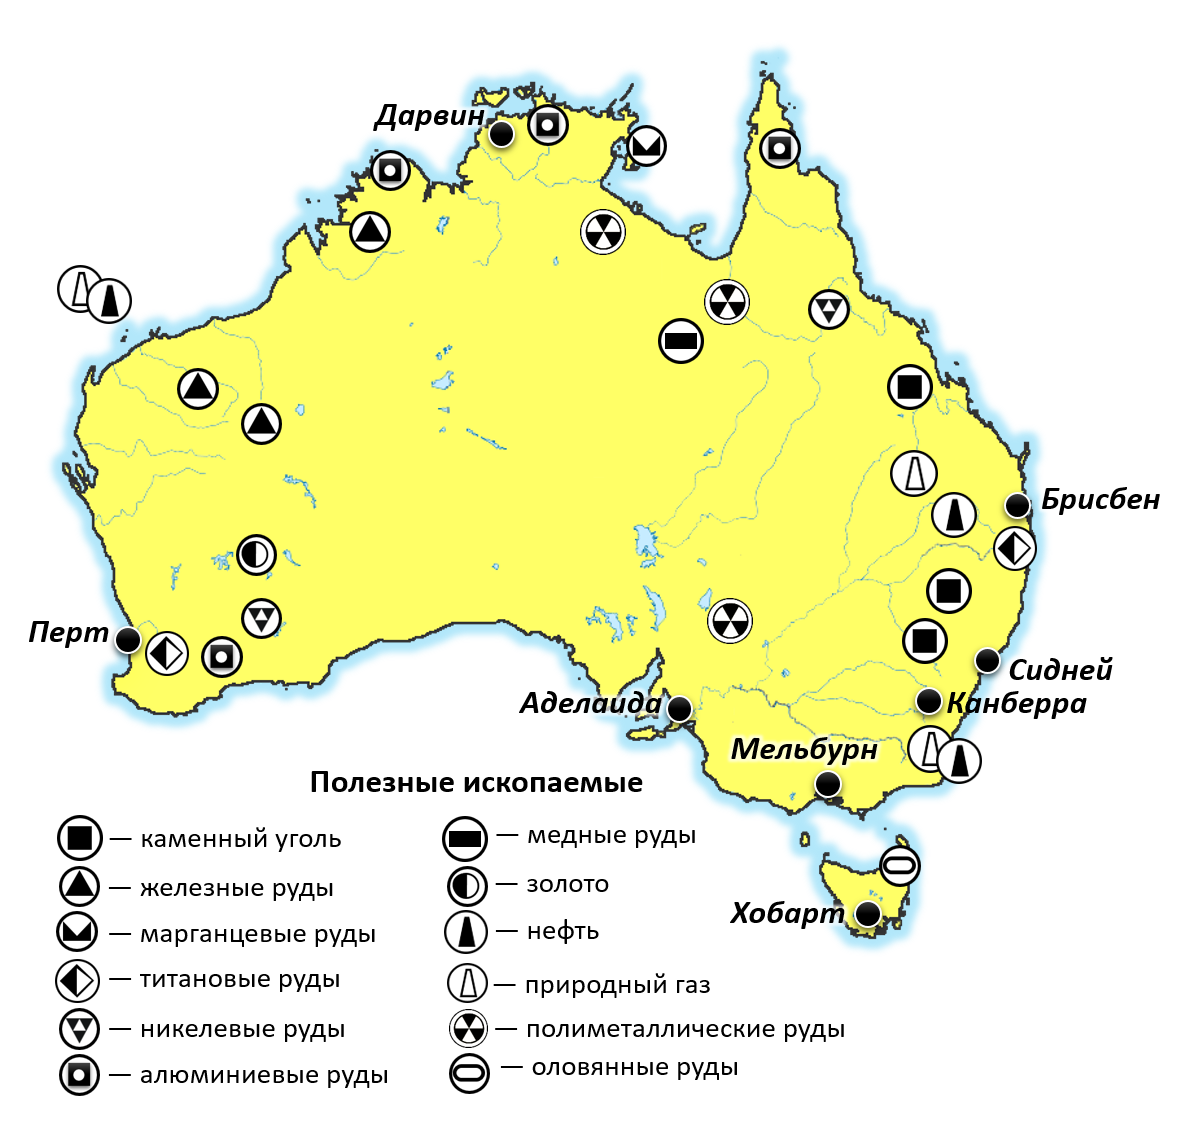 Месторождения полезных ископаемых в Австралии на карте. Месторождения полезных ископаемых Австралии на контурной карте. Полезные ископаемые Австралии на карте. Месторождение железной руды в Австралии на карте. Алюминиевые руды австралии